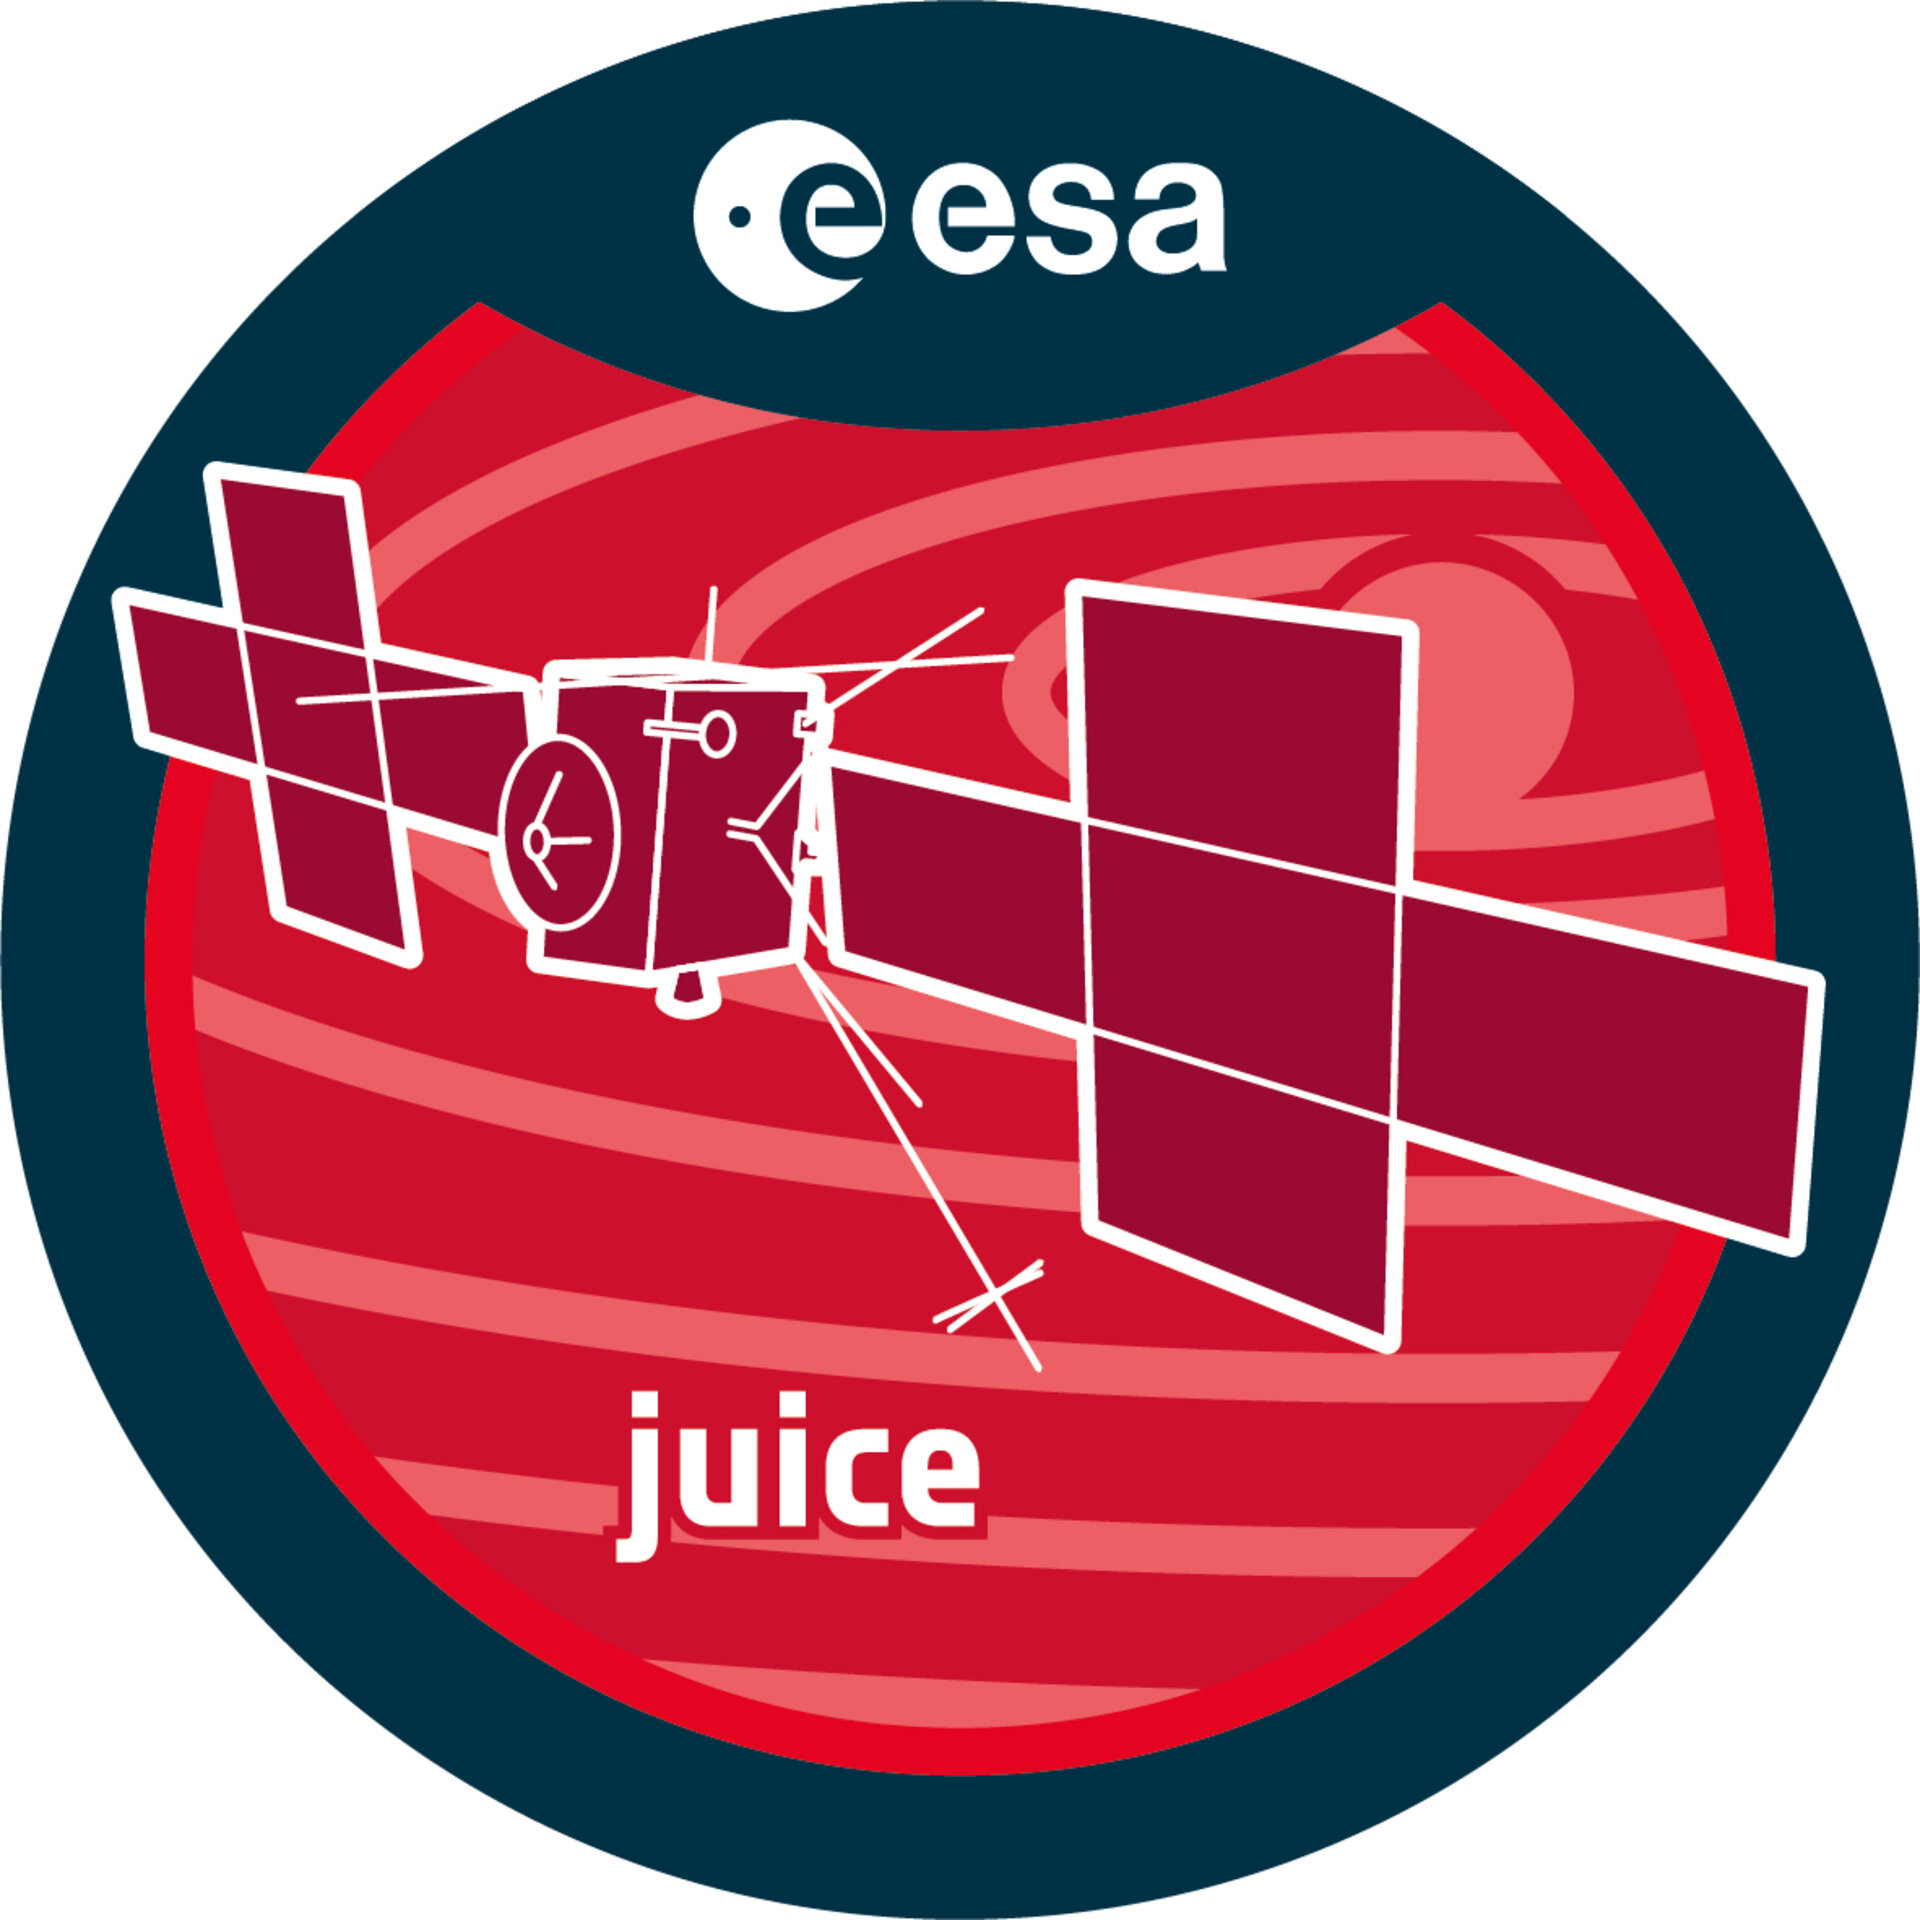 ESA - Juice